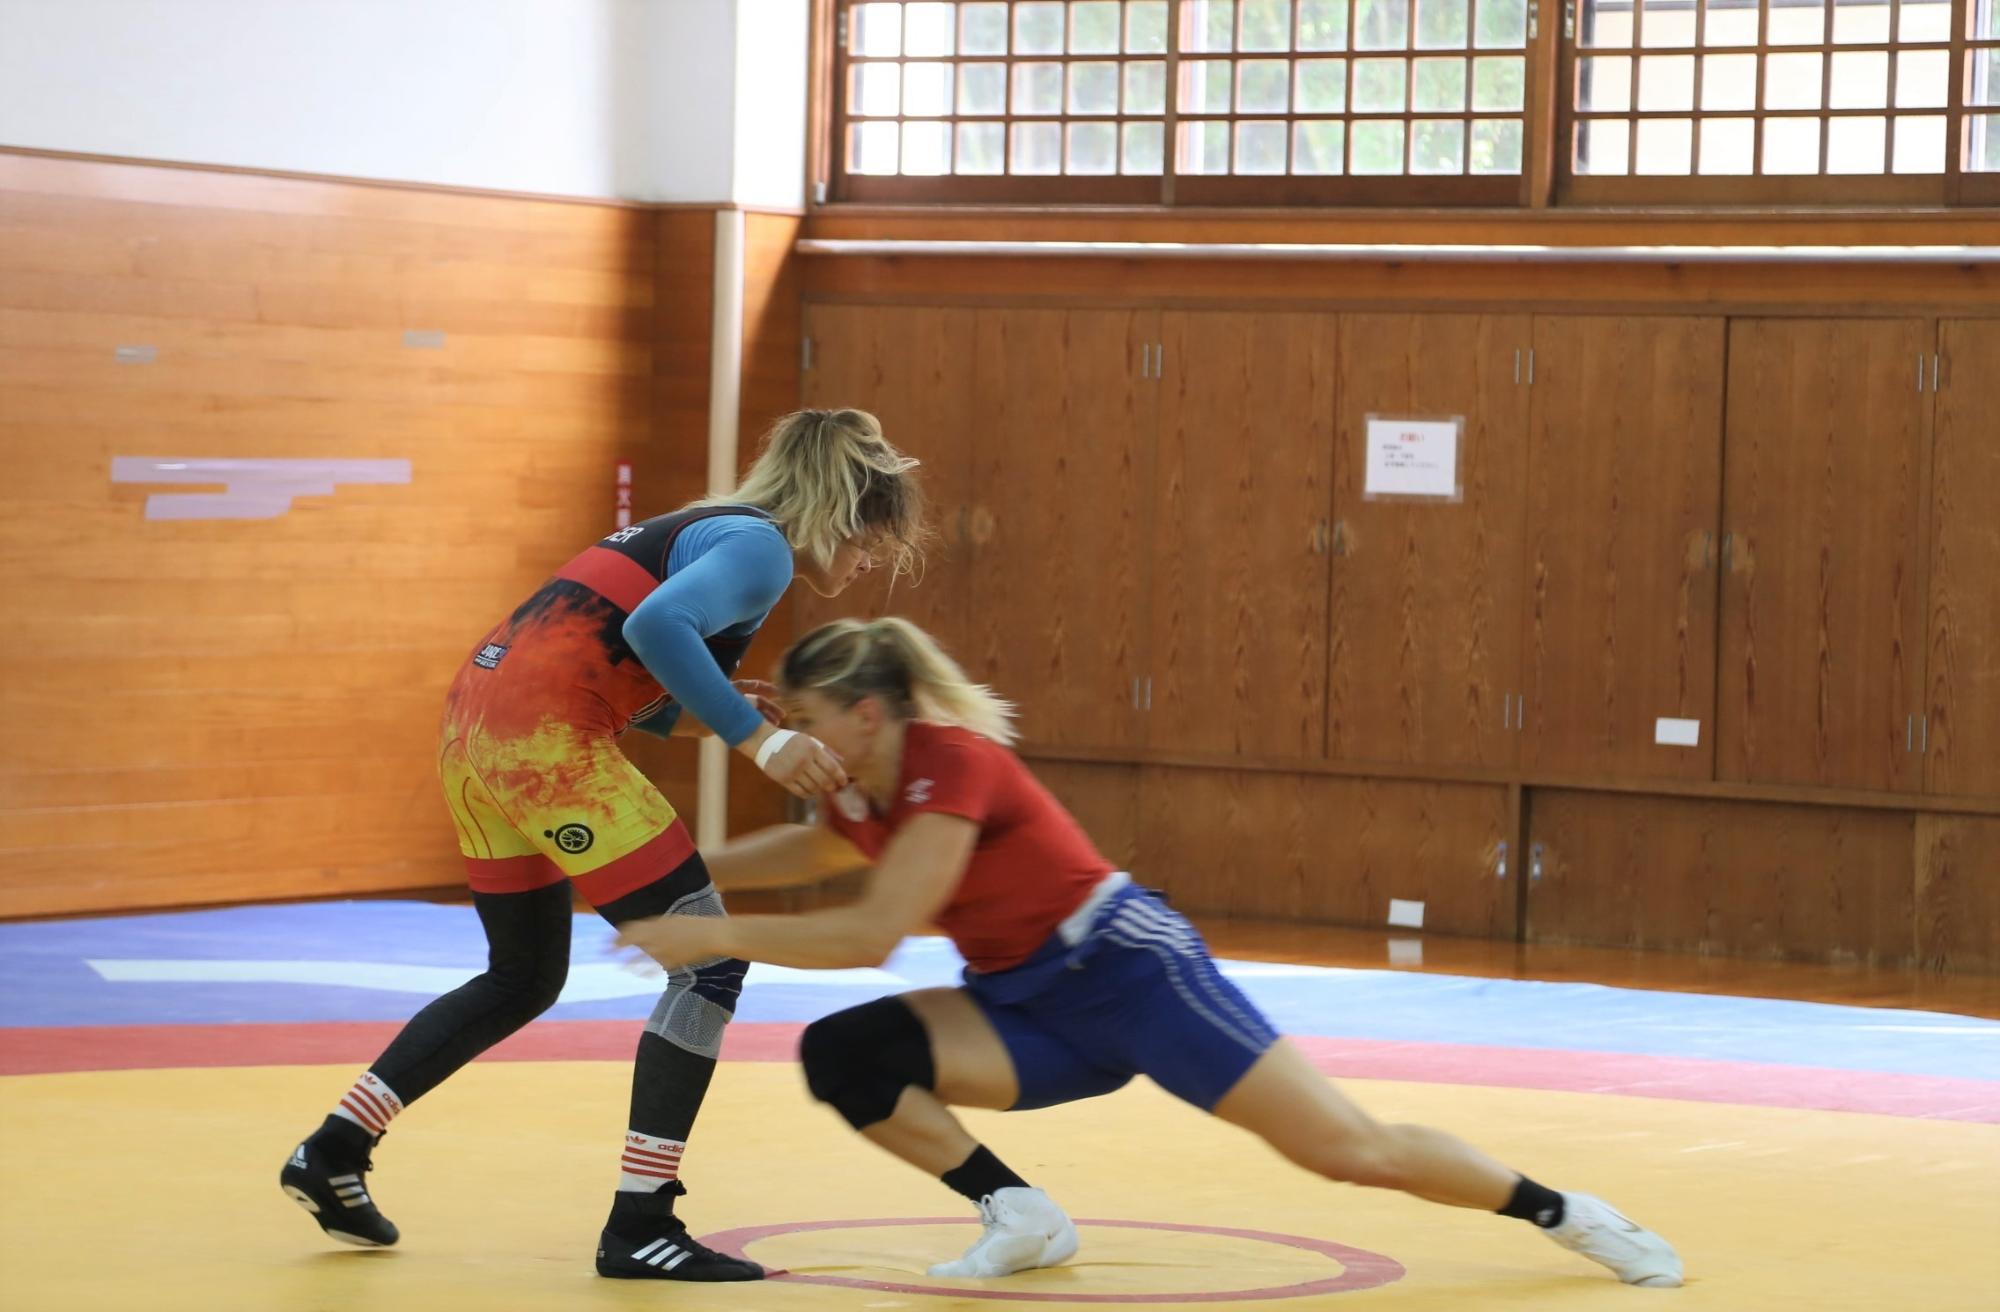 アナ・シェル選手、アリーネ・フォッケン選手が向かいあってレスリングの練習をしている写真